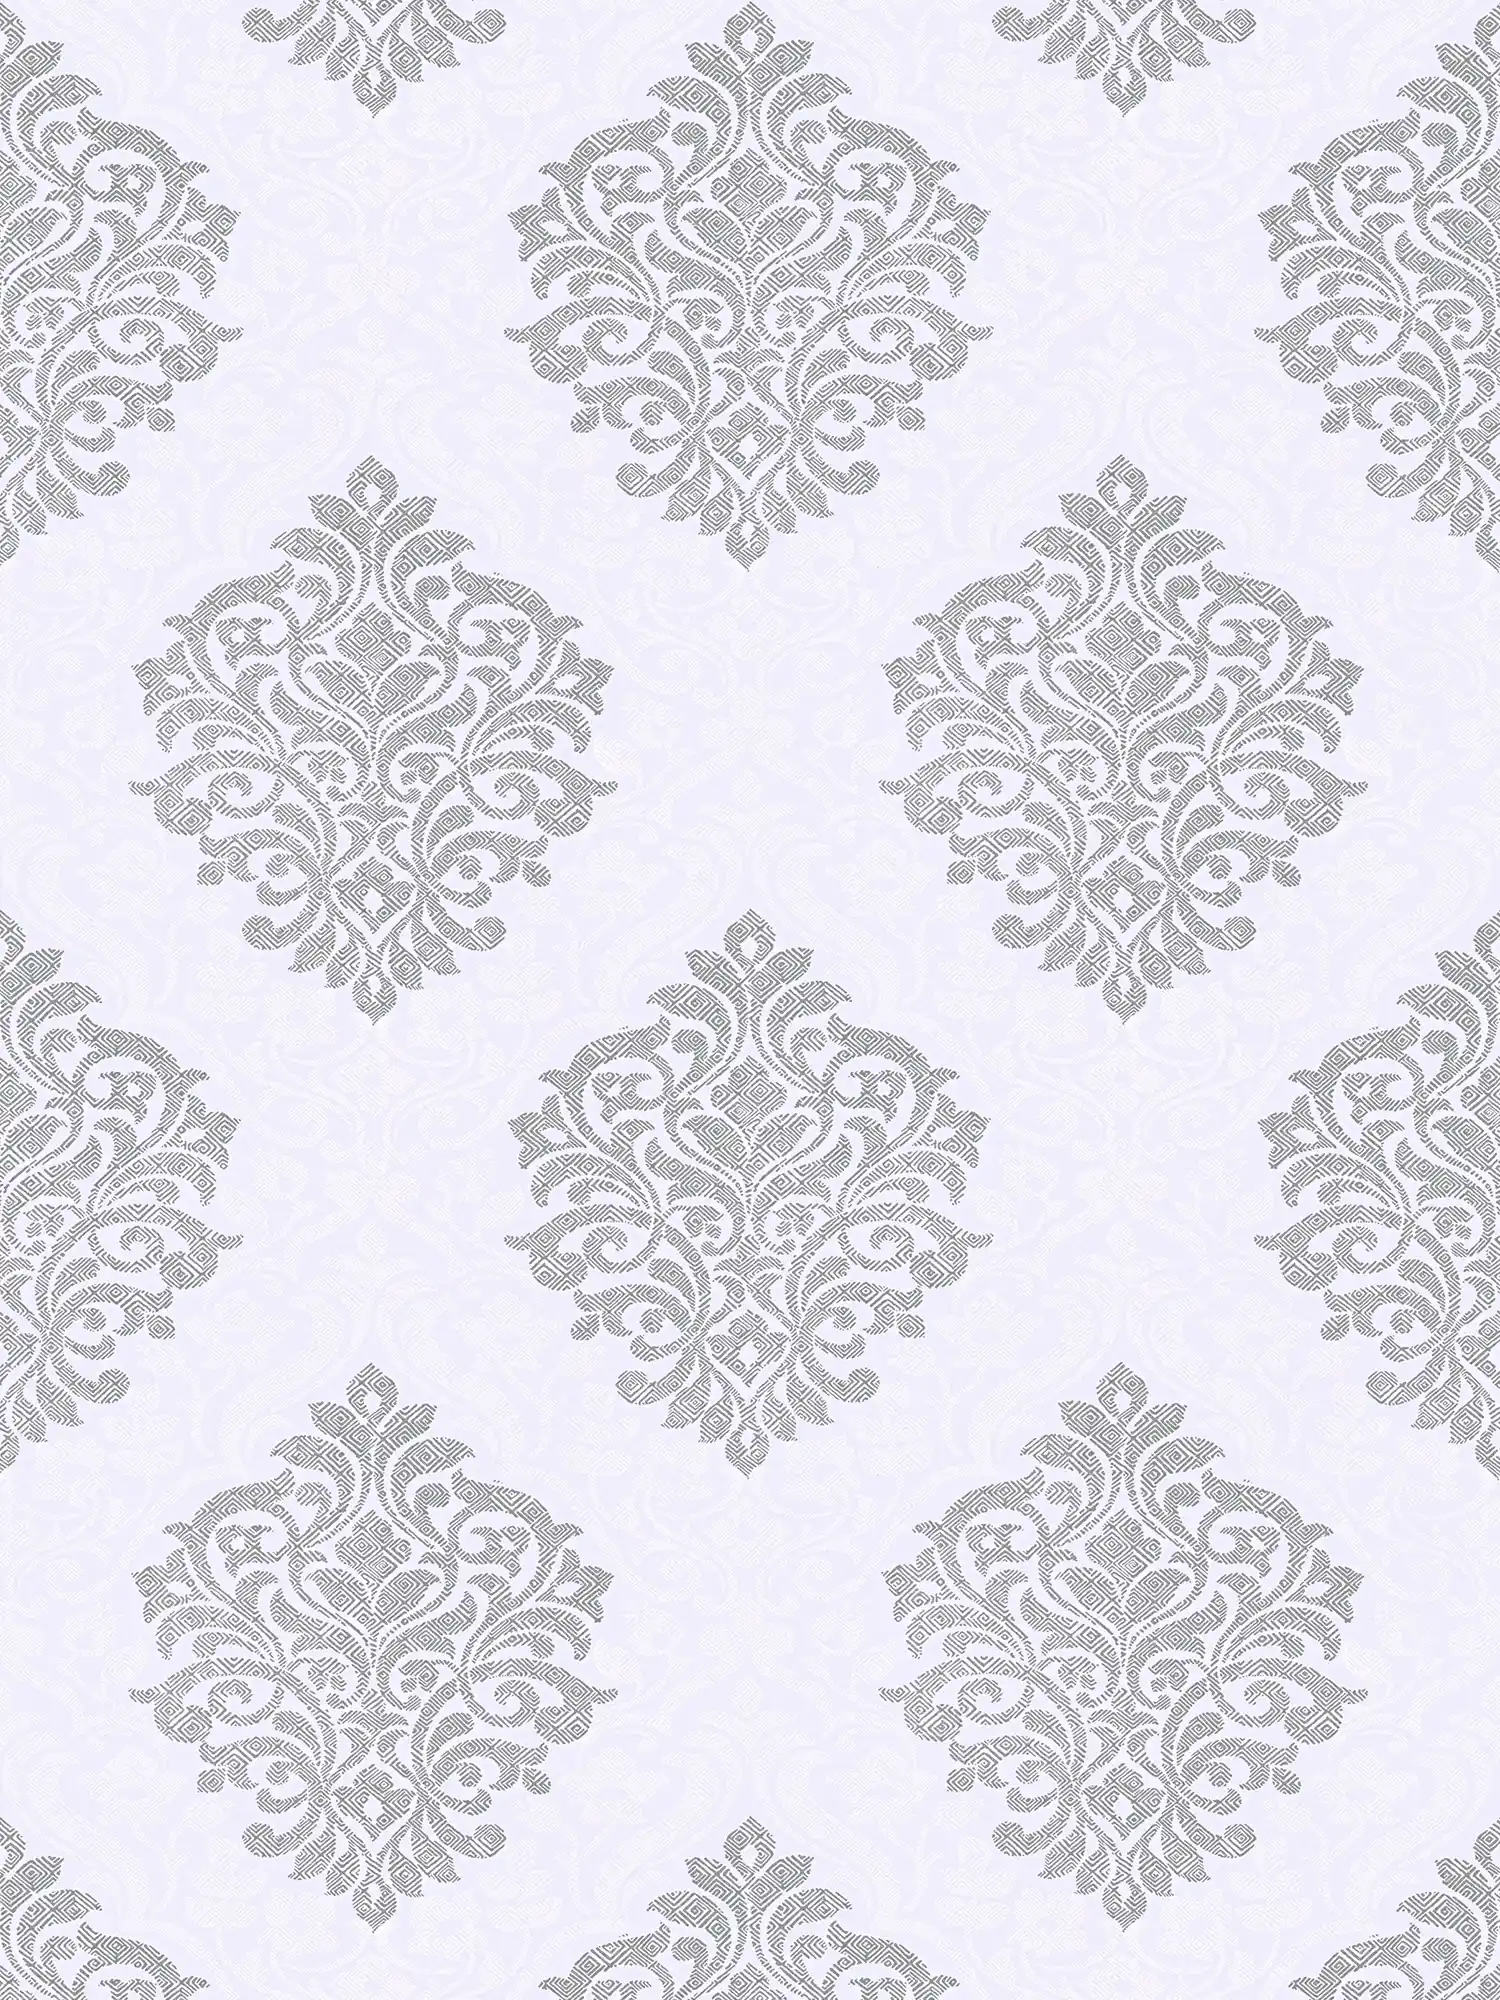 Papier peint floral ornemental motif losange style ethnique - gris, blanc, argenté
